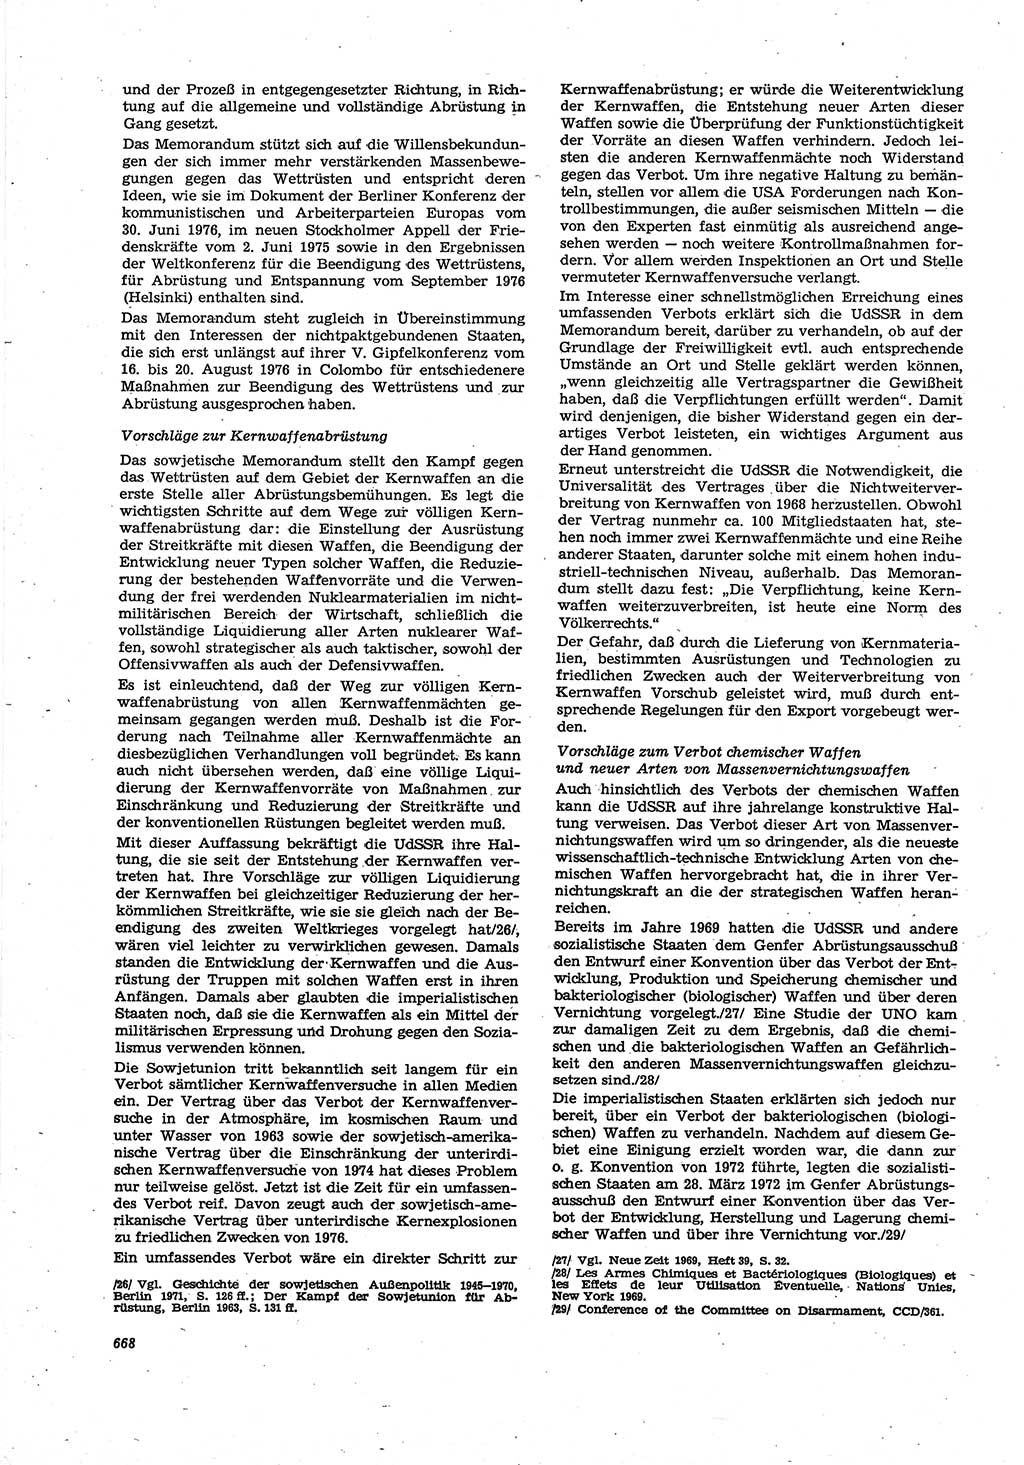 Neue Justiz (NJ), Zeitschrift für Recht und Rechtswissenschaft [Deutsche Demokratische Republik (DDR)], 30. Jahrgang 1976, Seite 668 (NJ DDR 1976, S. 668)